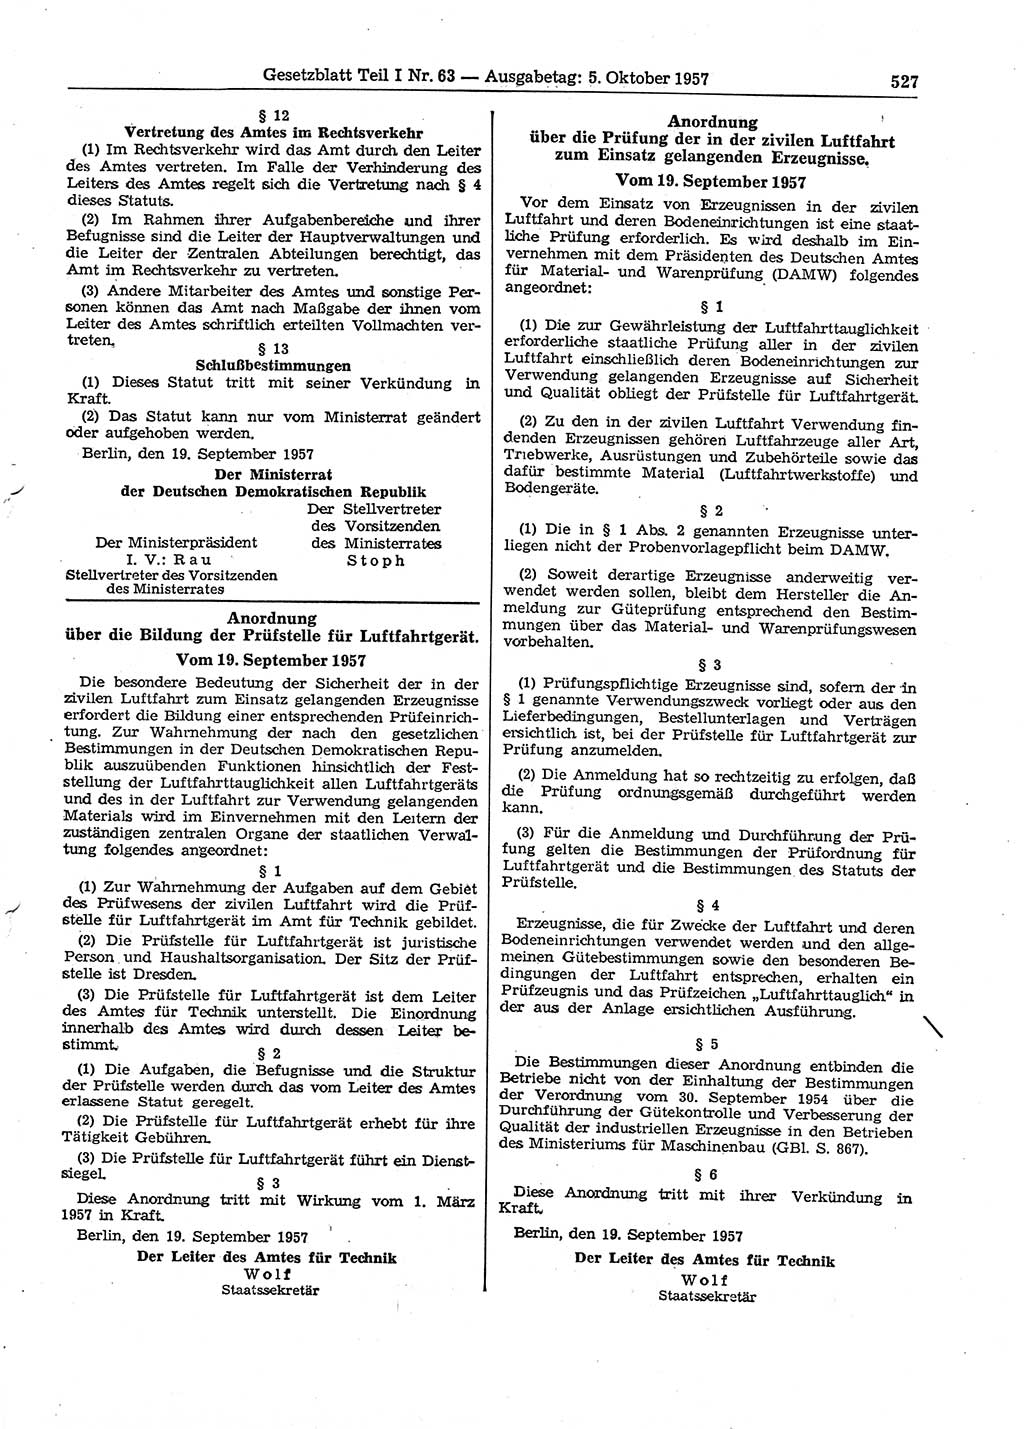 Gesetzblatt (GBl.) der Deutschen Demokratischen Republik (DDR) Teil Ⅰ 1957, Seite 527 (GBl. DDR Ⅰ 1957, S. 527)